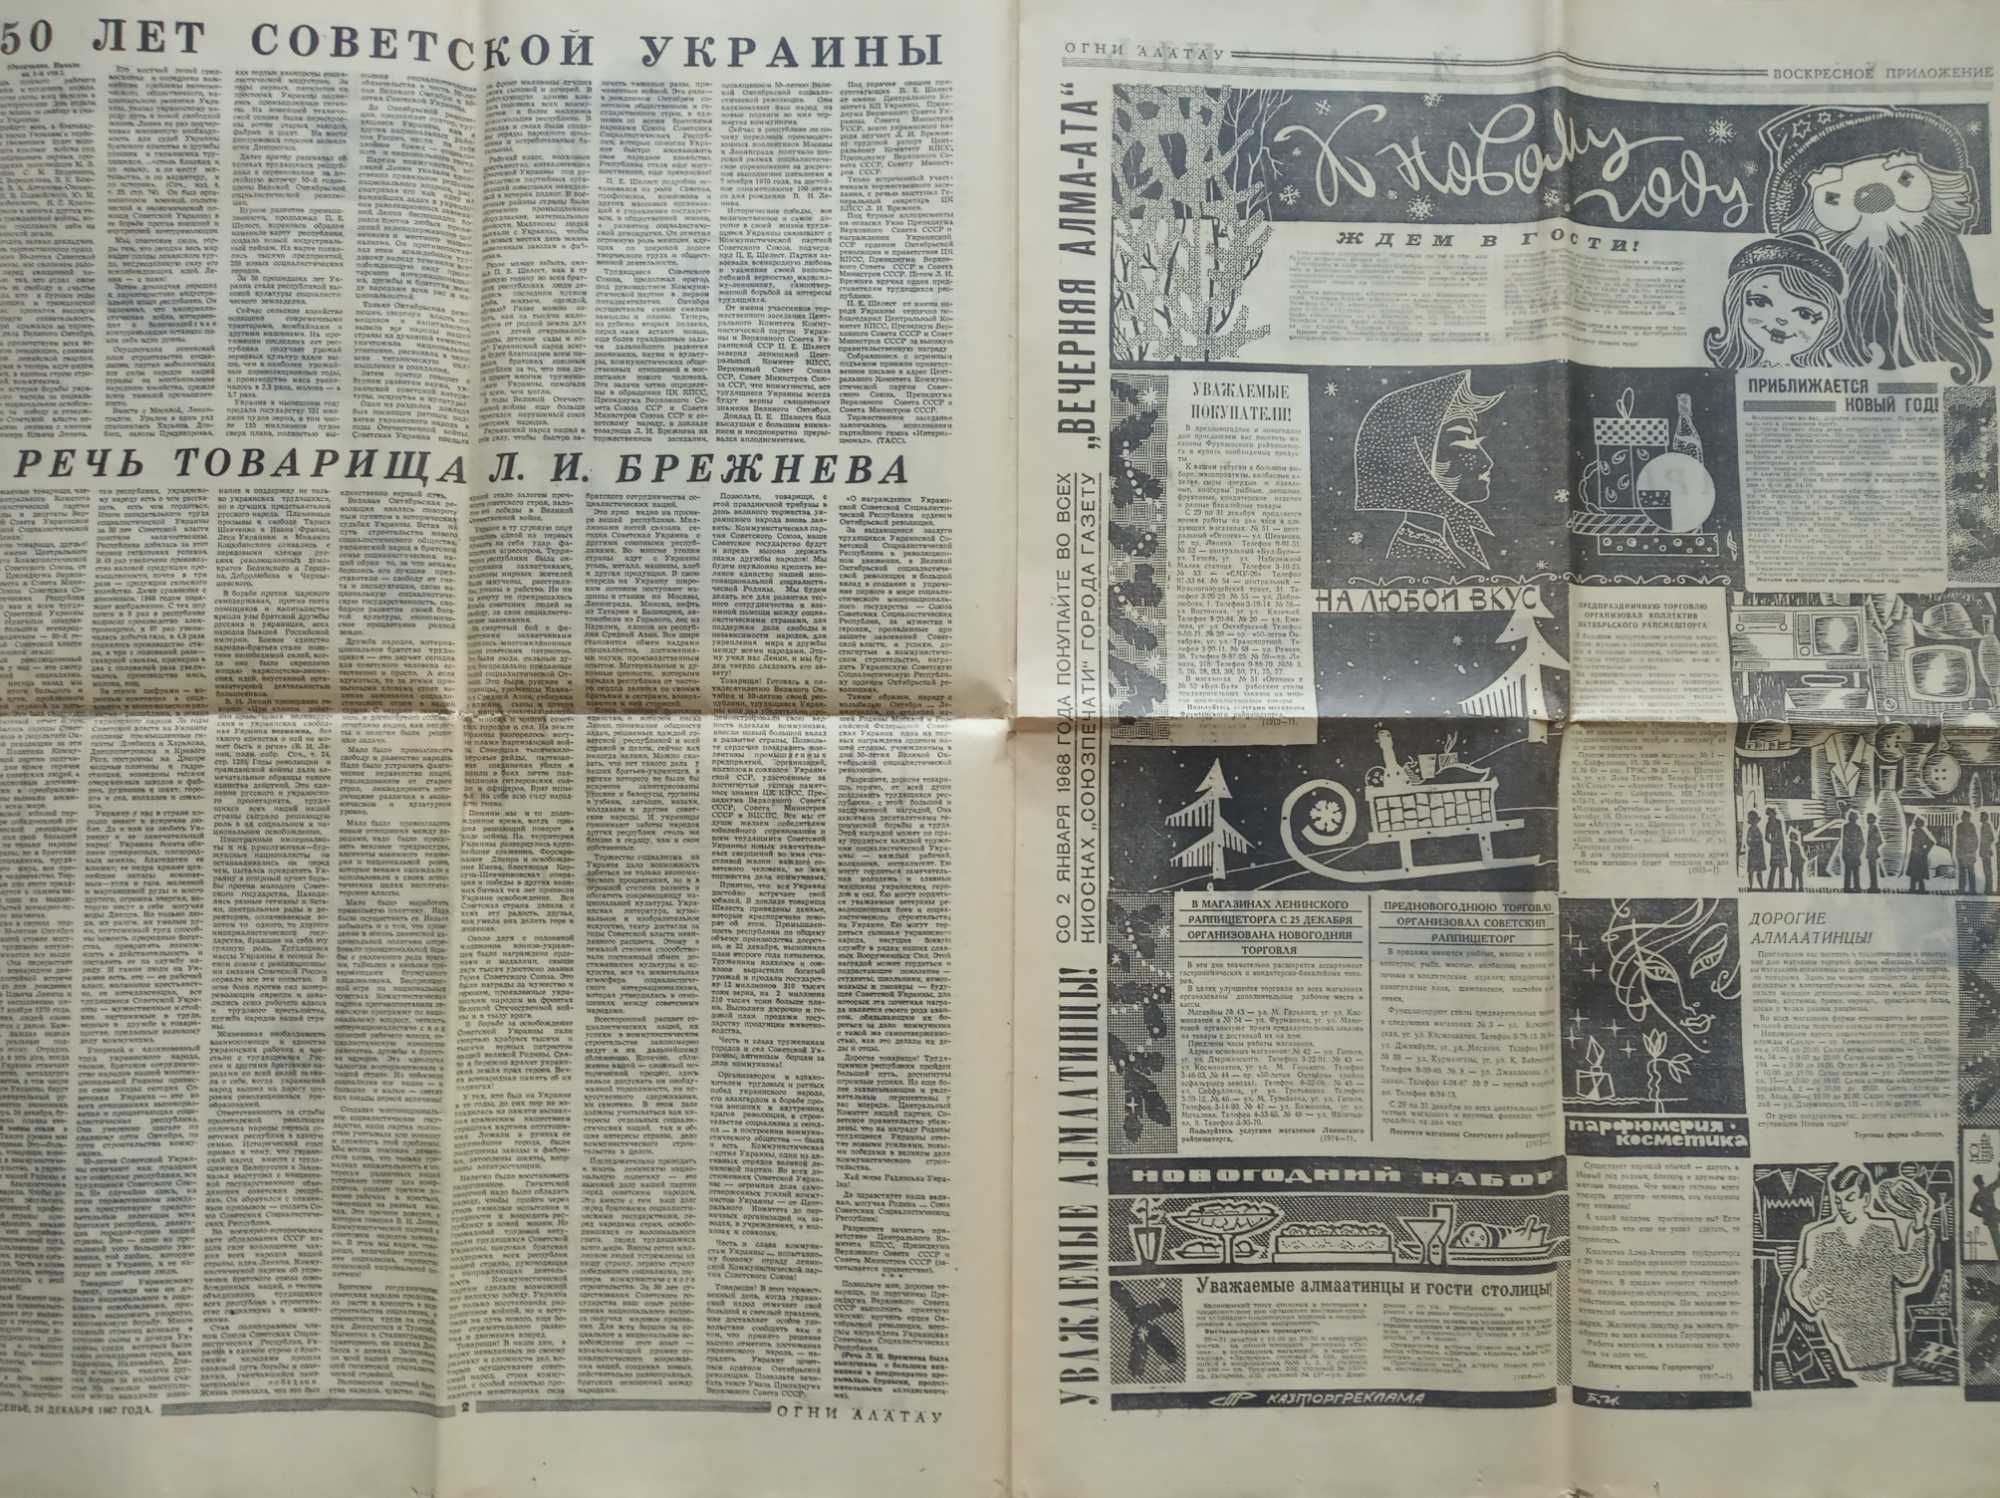 1967г. Огни Алатау газета